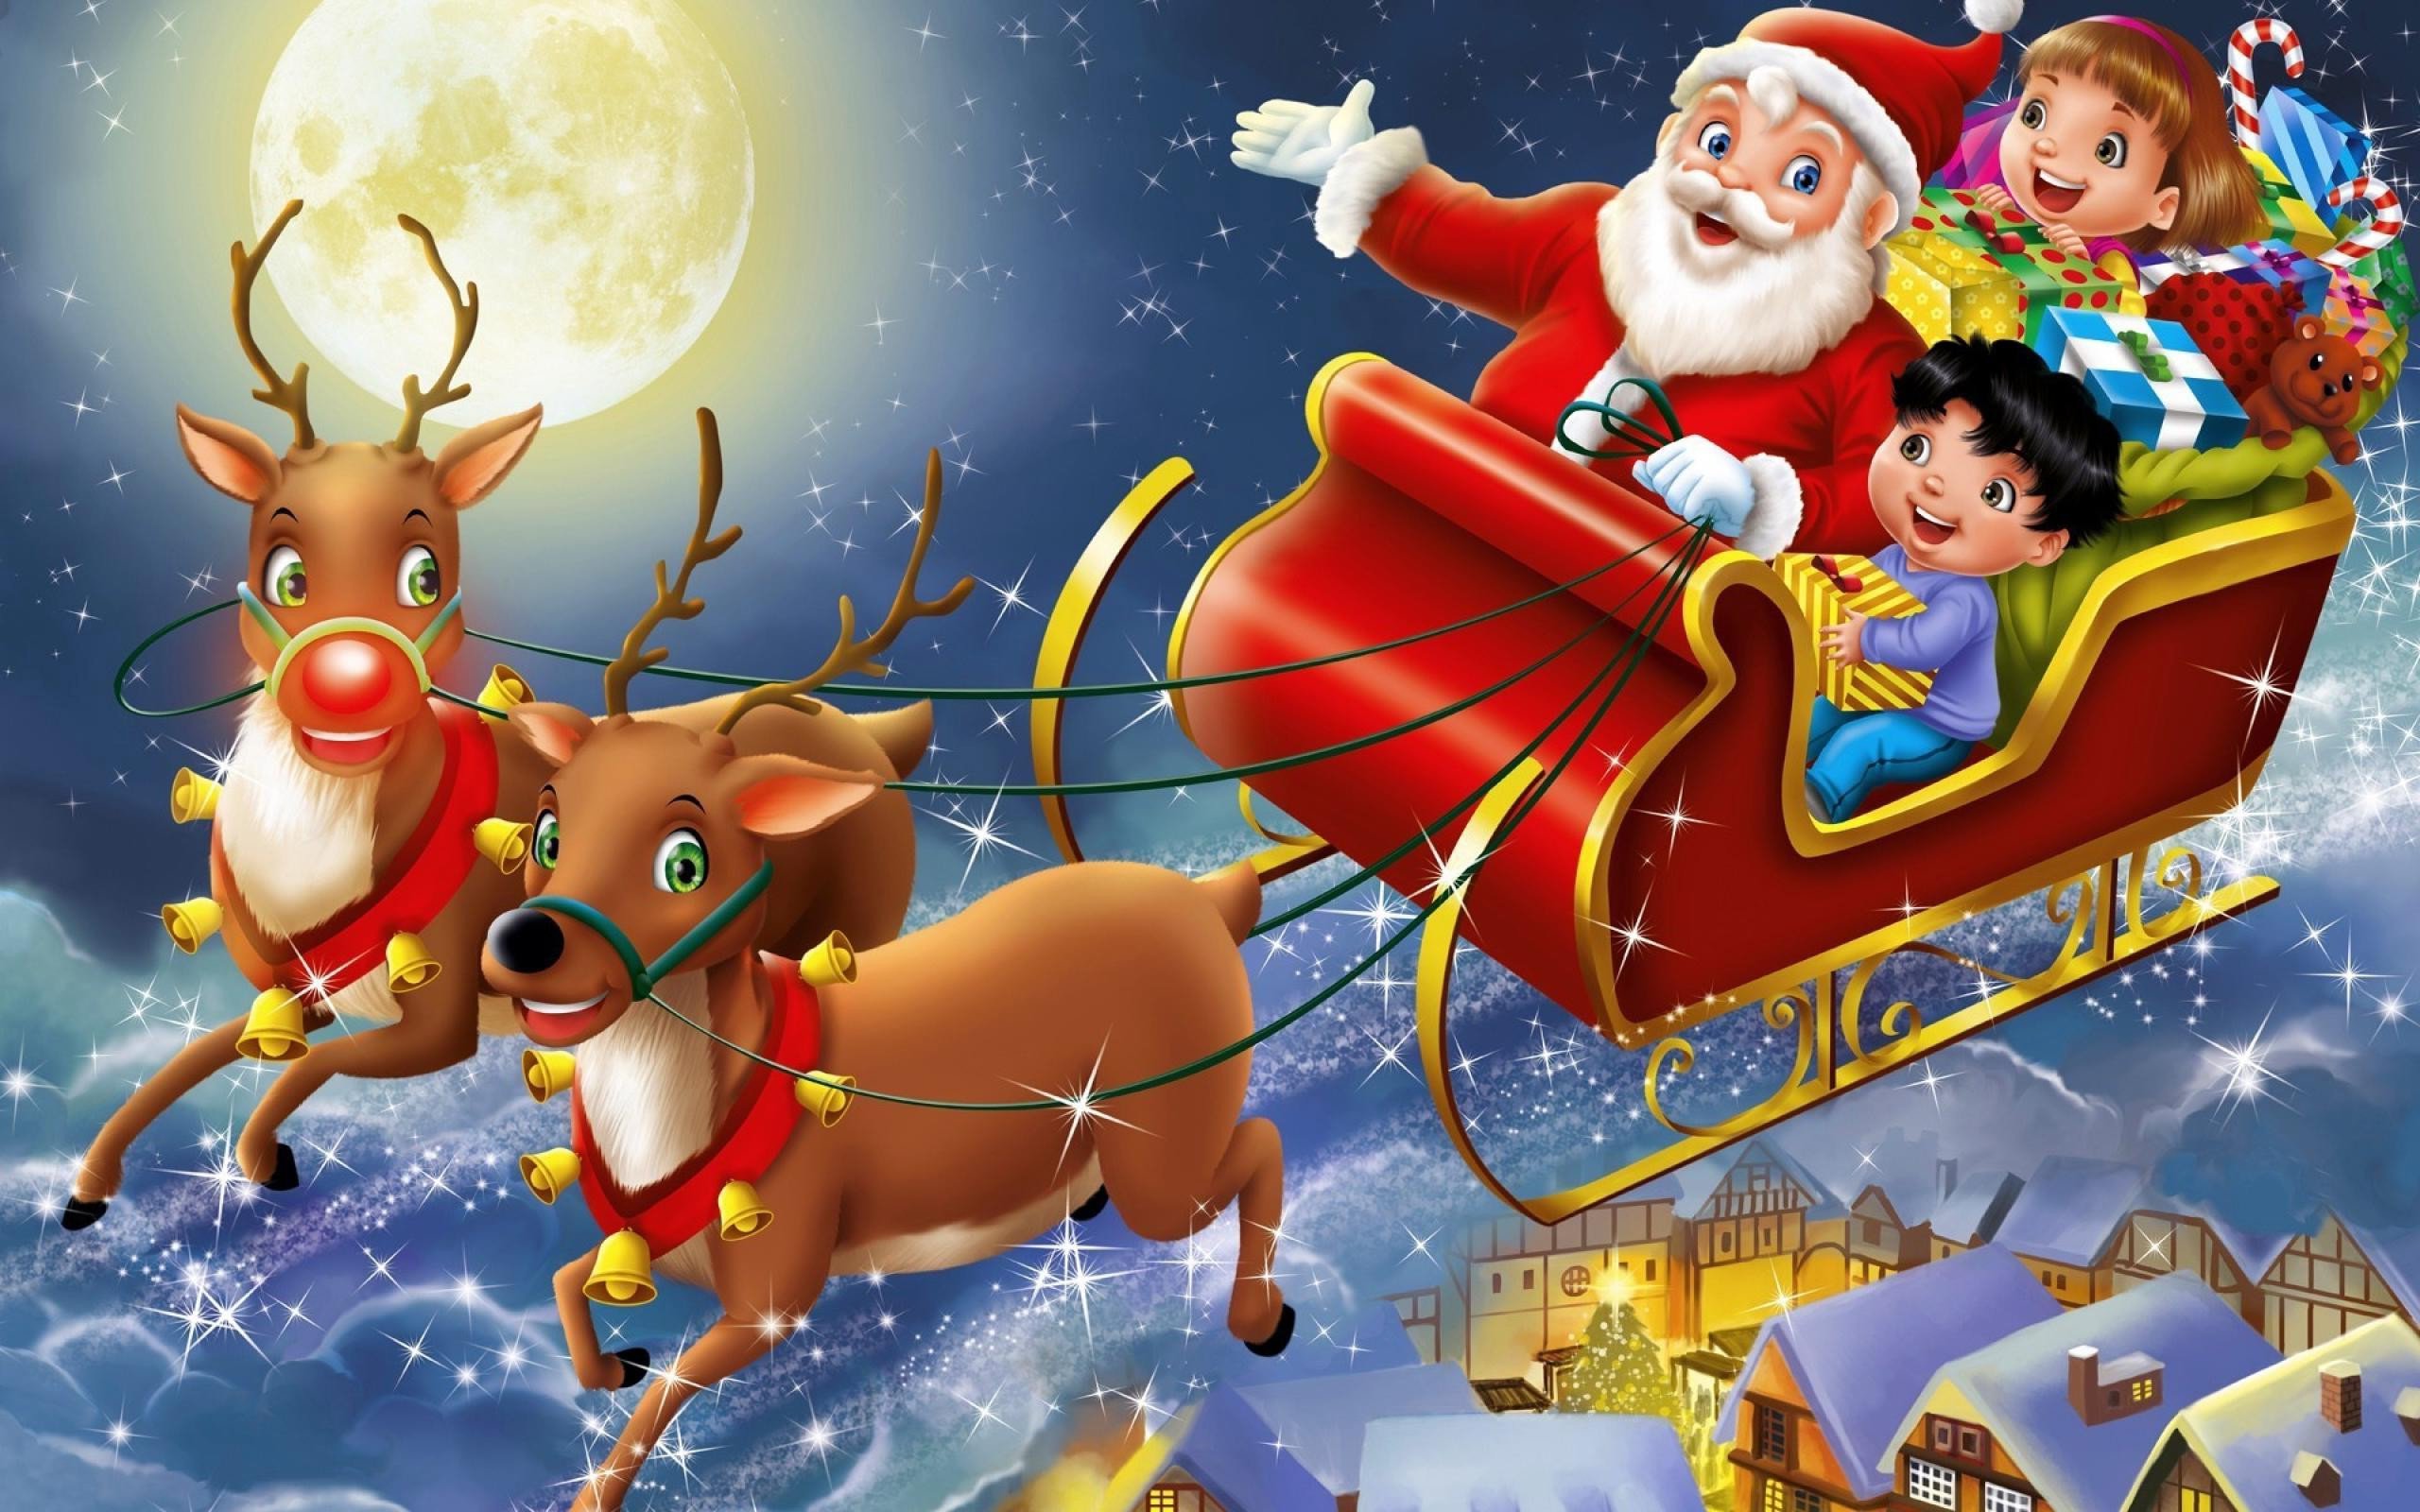 Hãy xem hình ảnh Ông già Noel và tuần lộc với những tình huống đầy hài hước và dễ thương trong một mùa Giáng Sinh ấm áp. Chắc chắn bạn sẽ không thể nào nhịn cười trước sự hiếu động của những chú tuần lộc này.